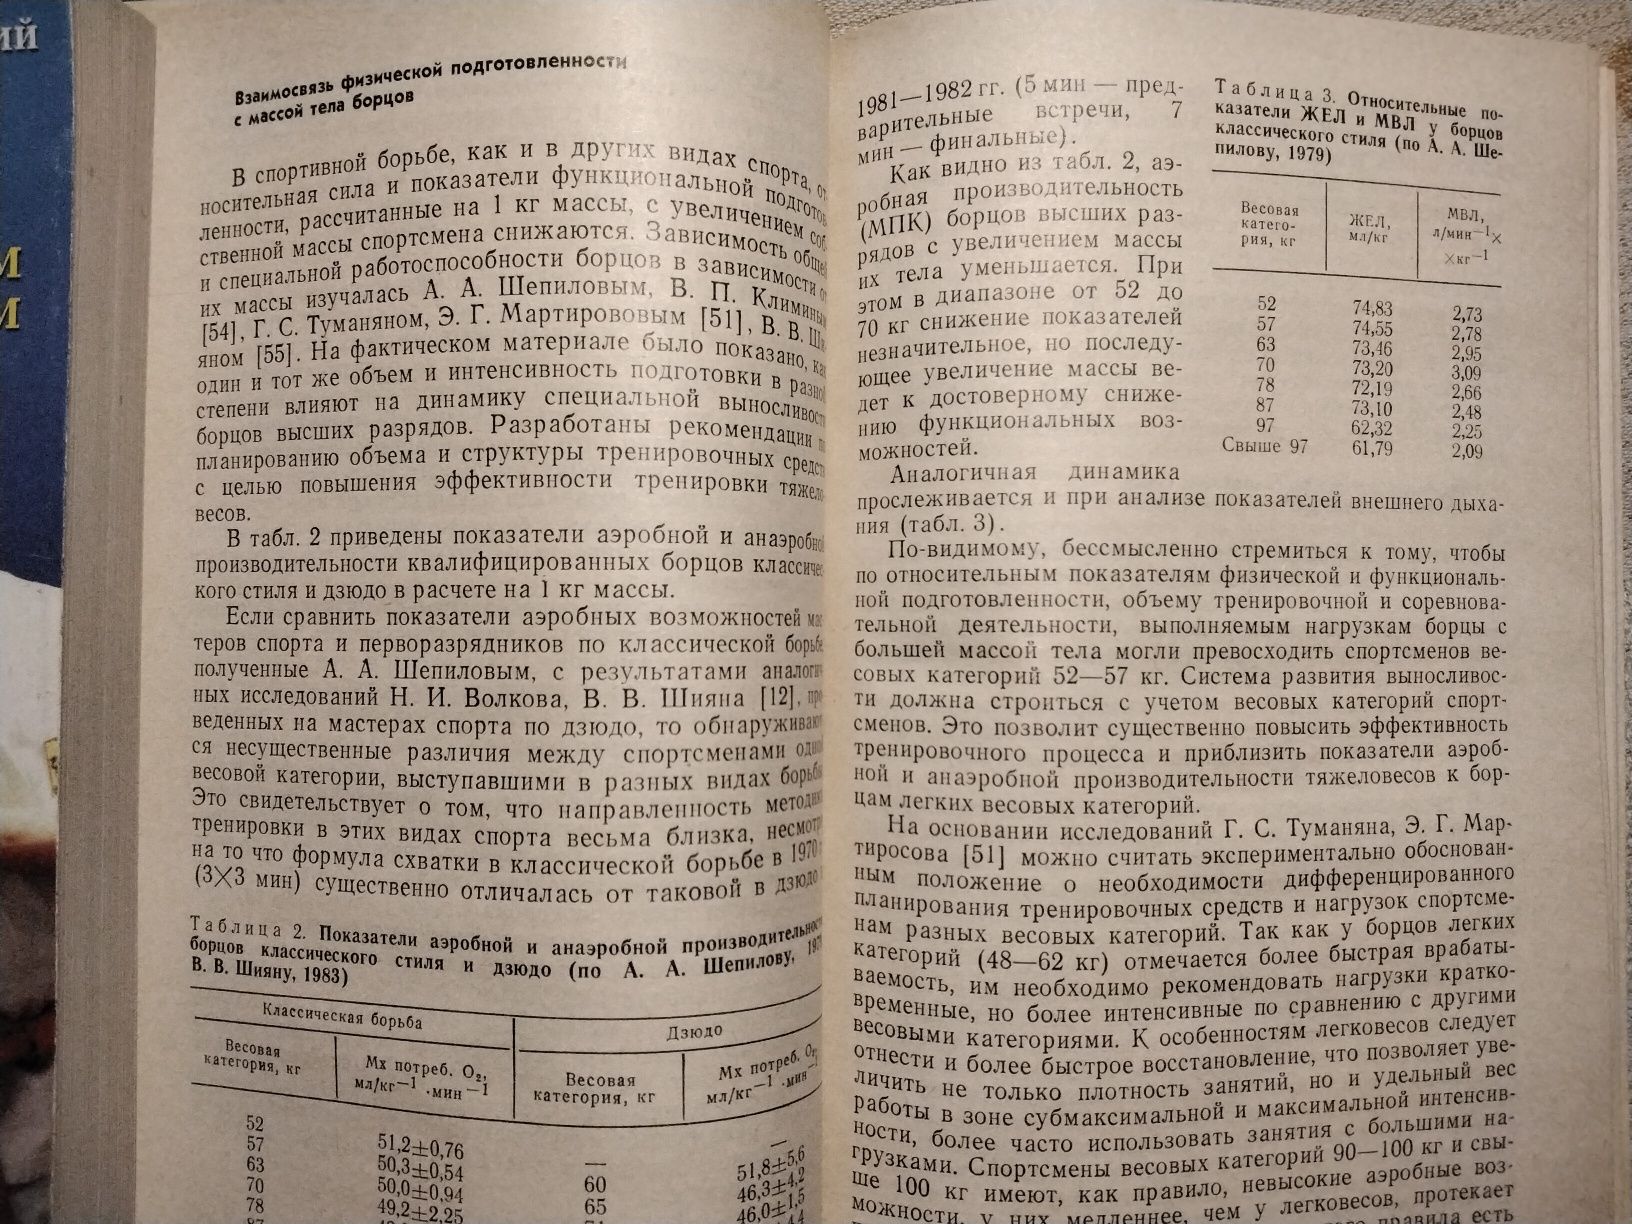 Дахновский Лещенко Подготовка борцов высокого класса 1989